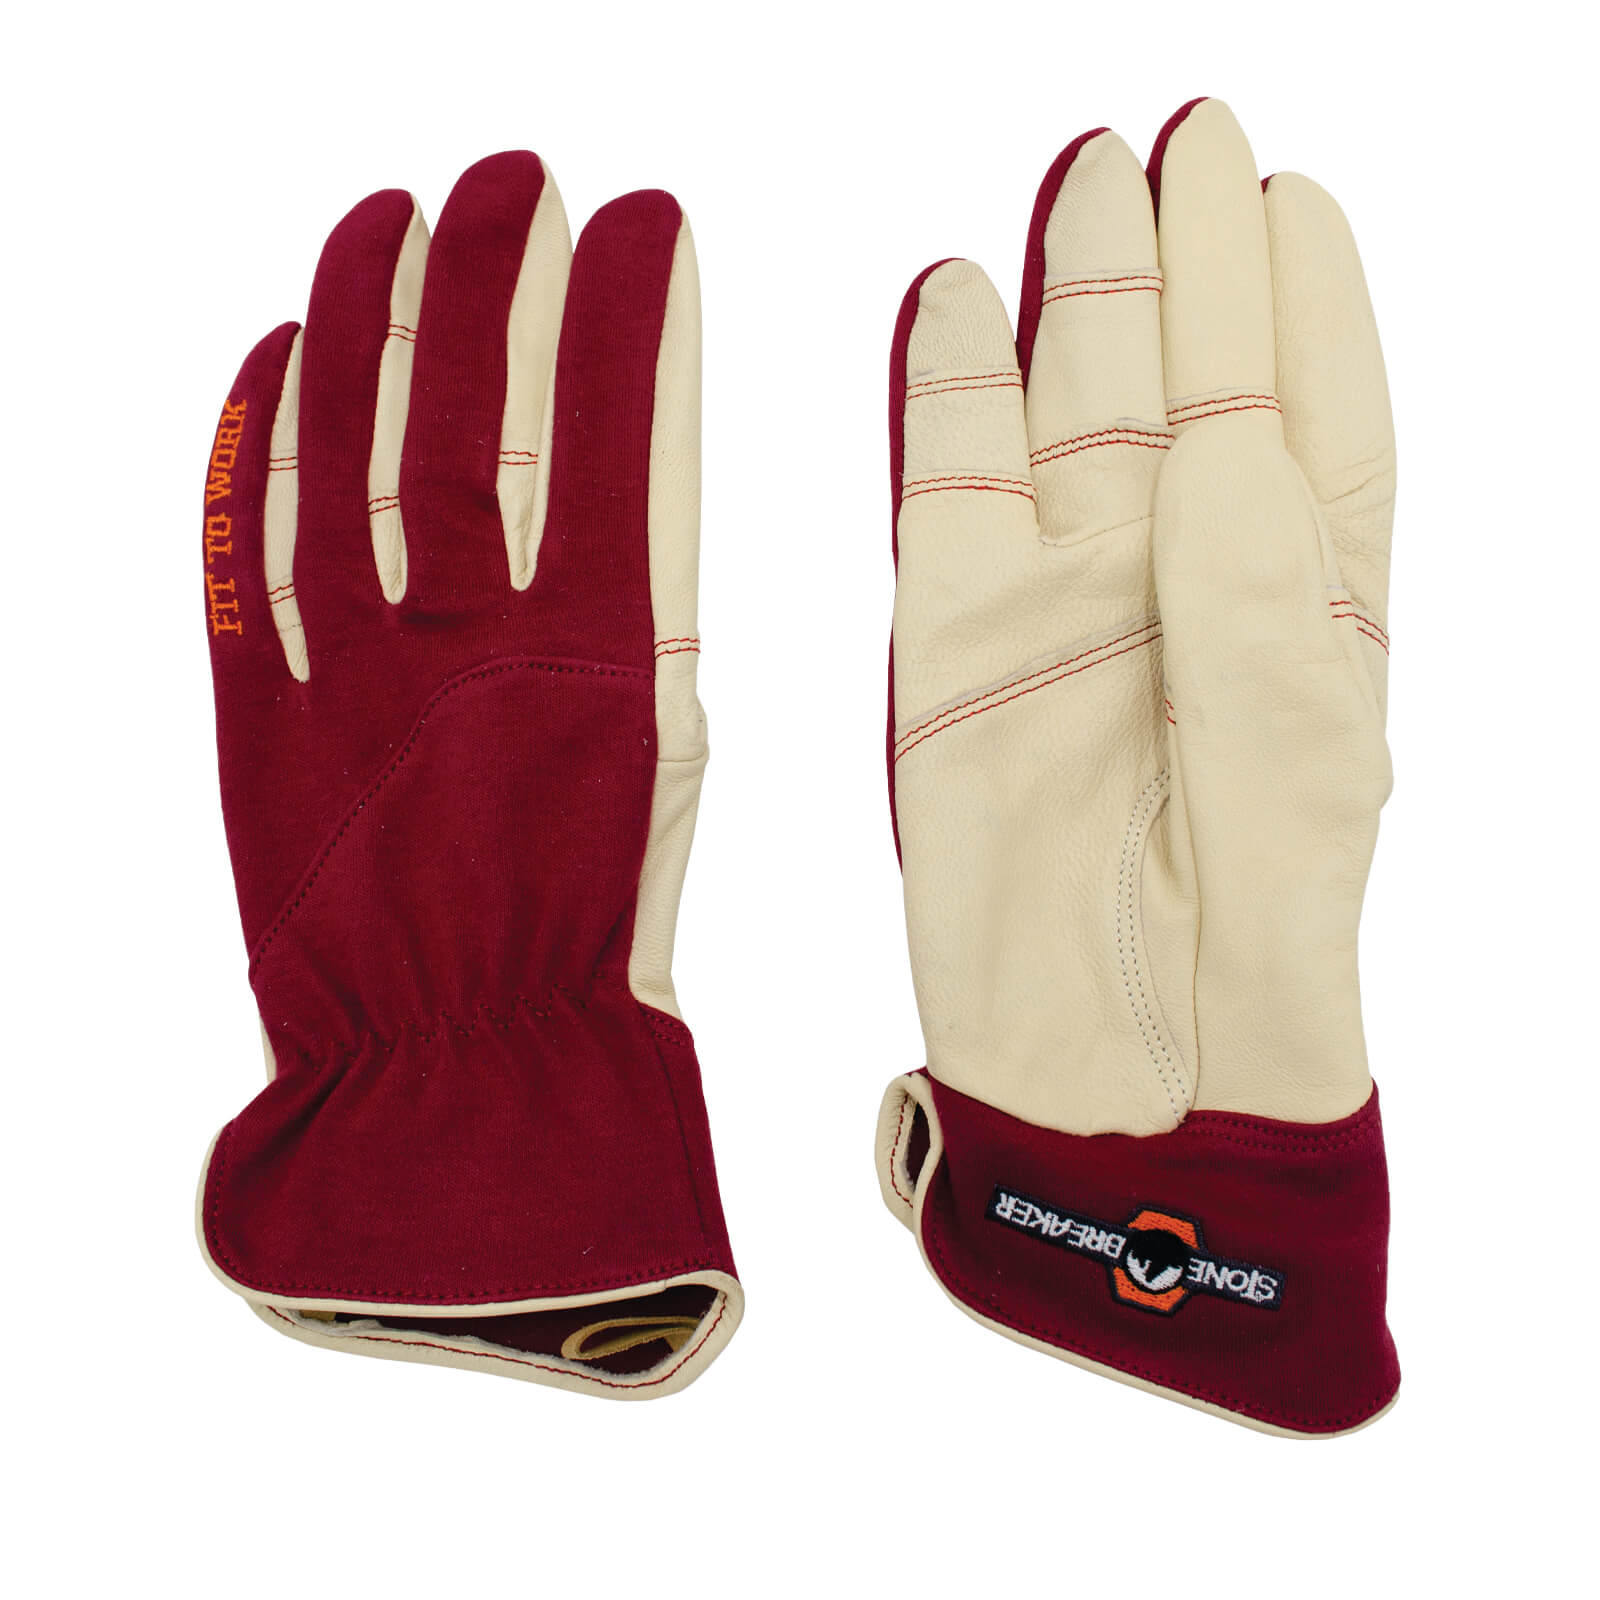 Stonebreaker Womens Everyday Work Gloves - Small Burgundy